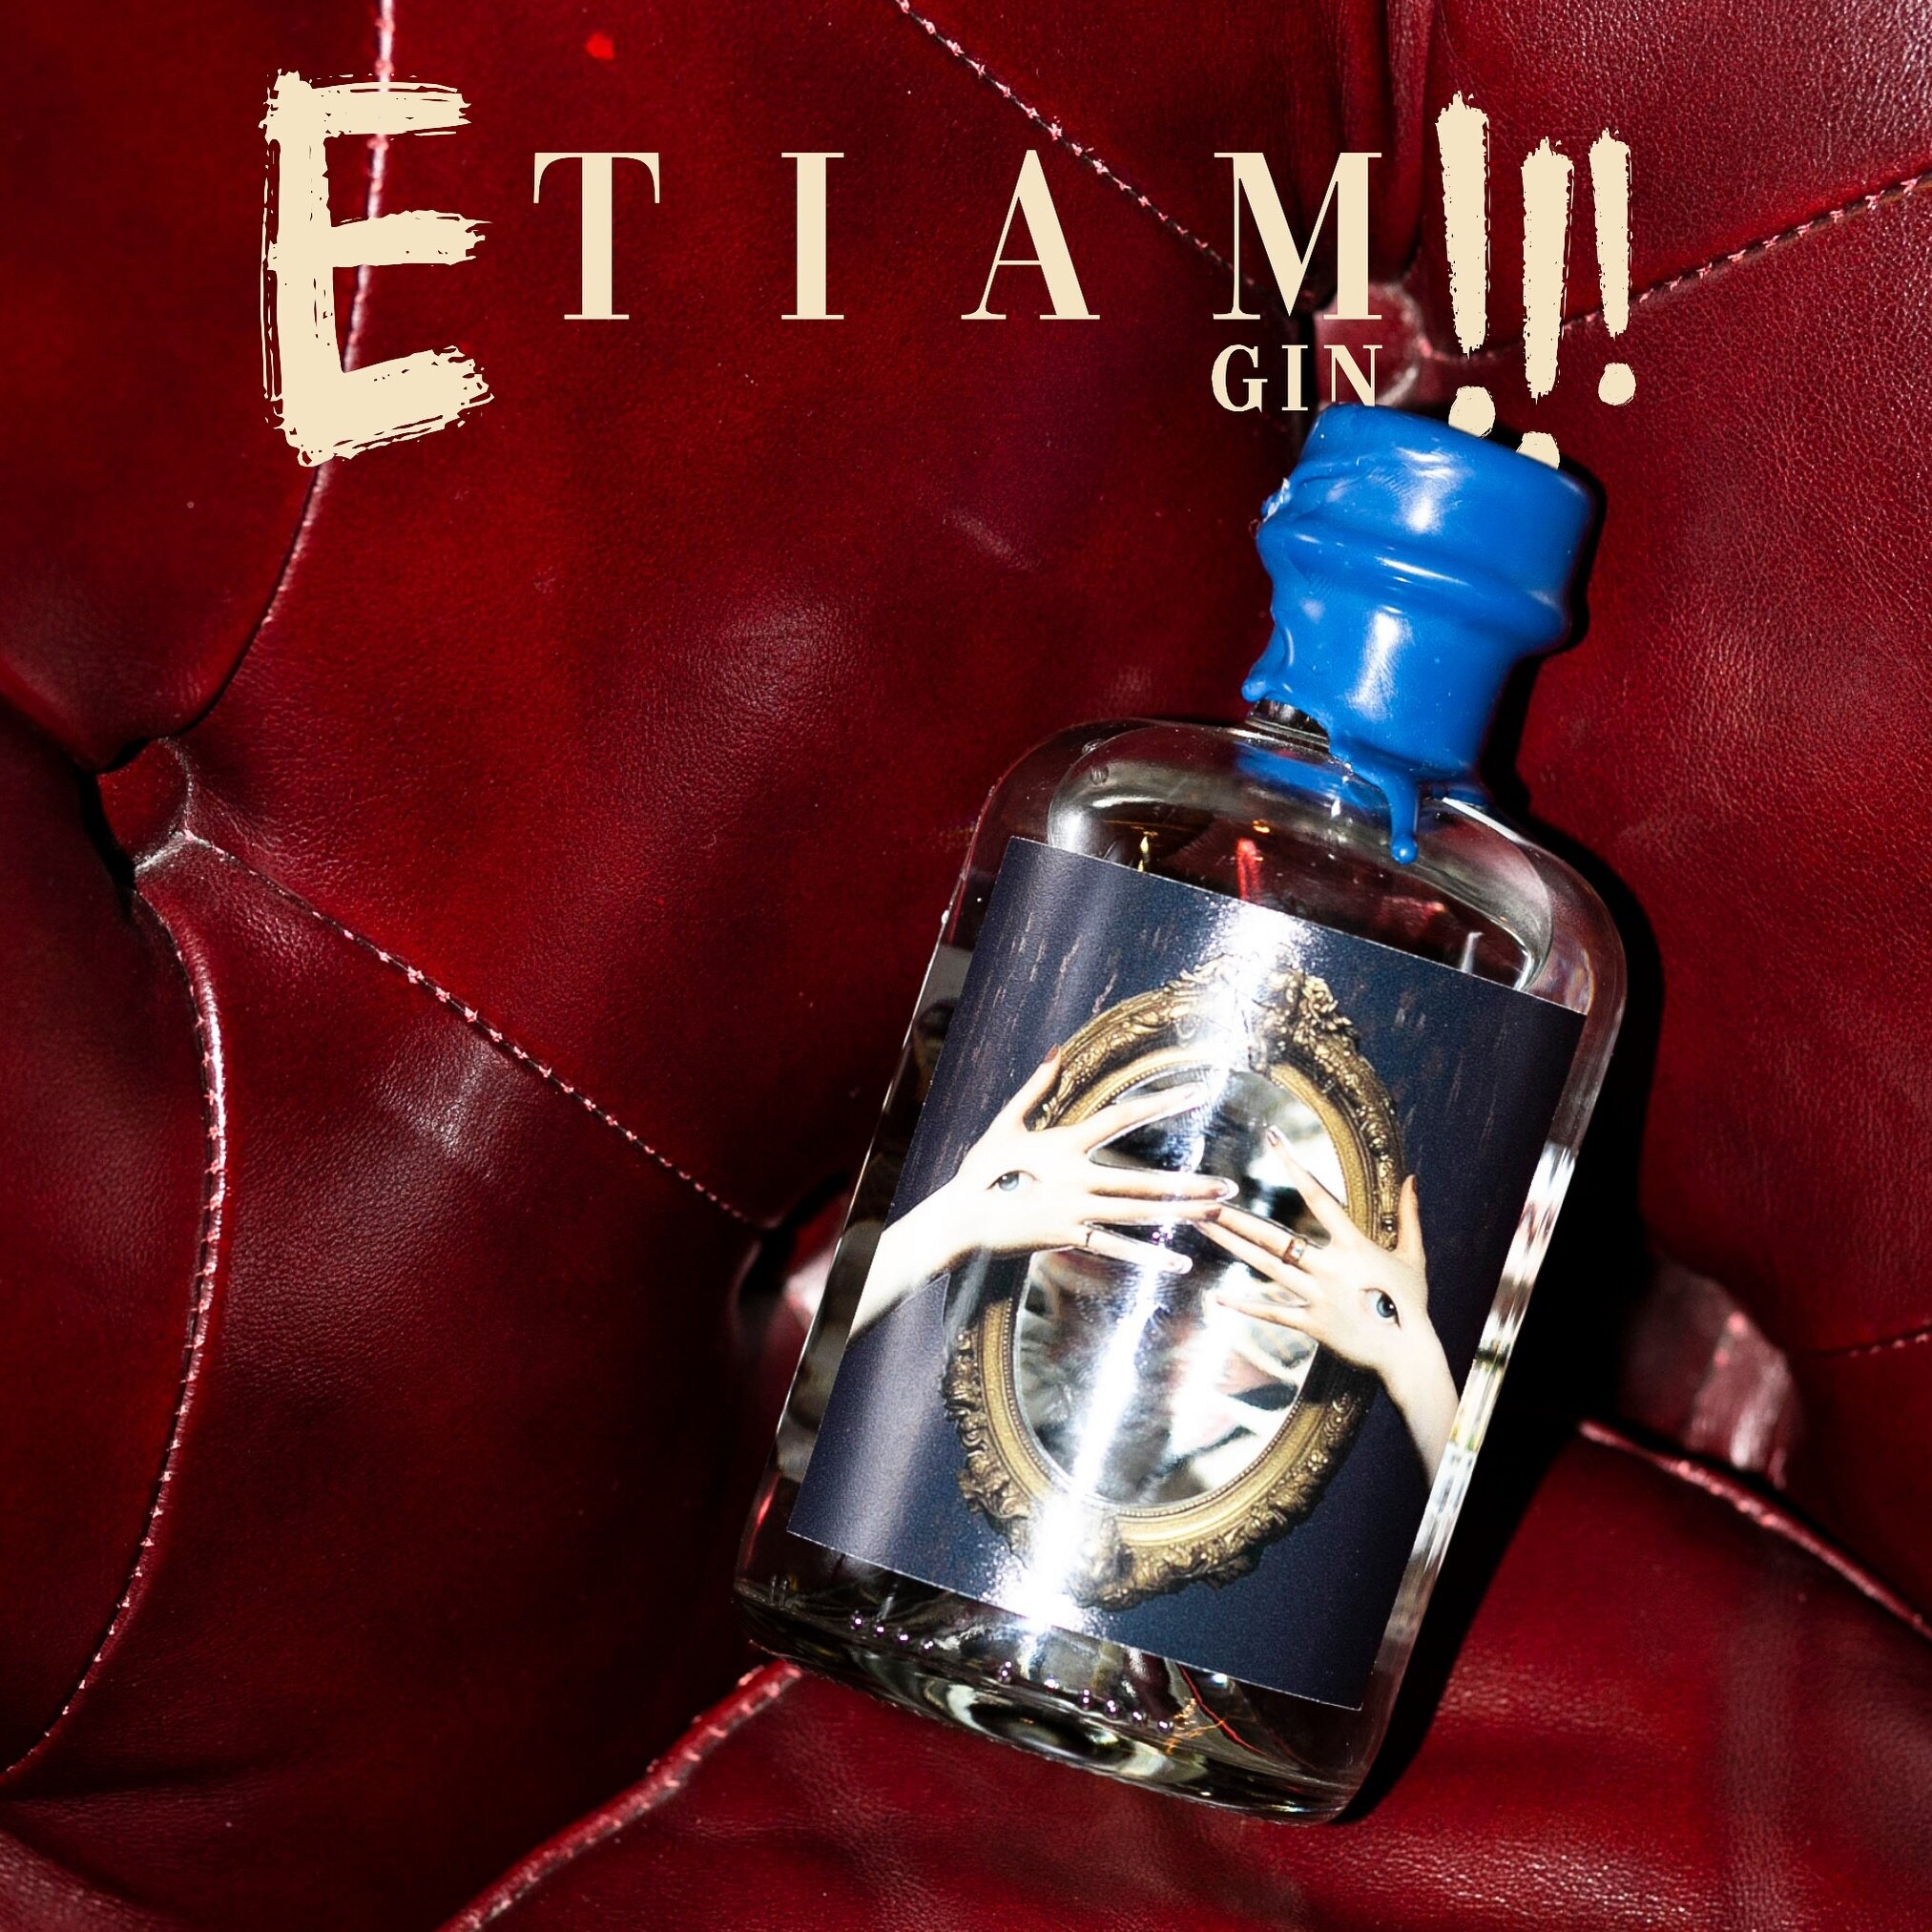 Notting Hill presenta Etiam Gin, un distillato unico che racchiude in s&eacute; l&rsquo;anima della natura e il fascino di un&rsquo;antica leggenda.

Un sorso di storia e un&rsquo;evocazione di epoche passate per un&rsquo;esperienza sensoriale unica.